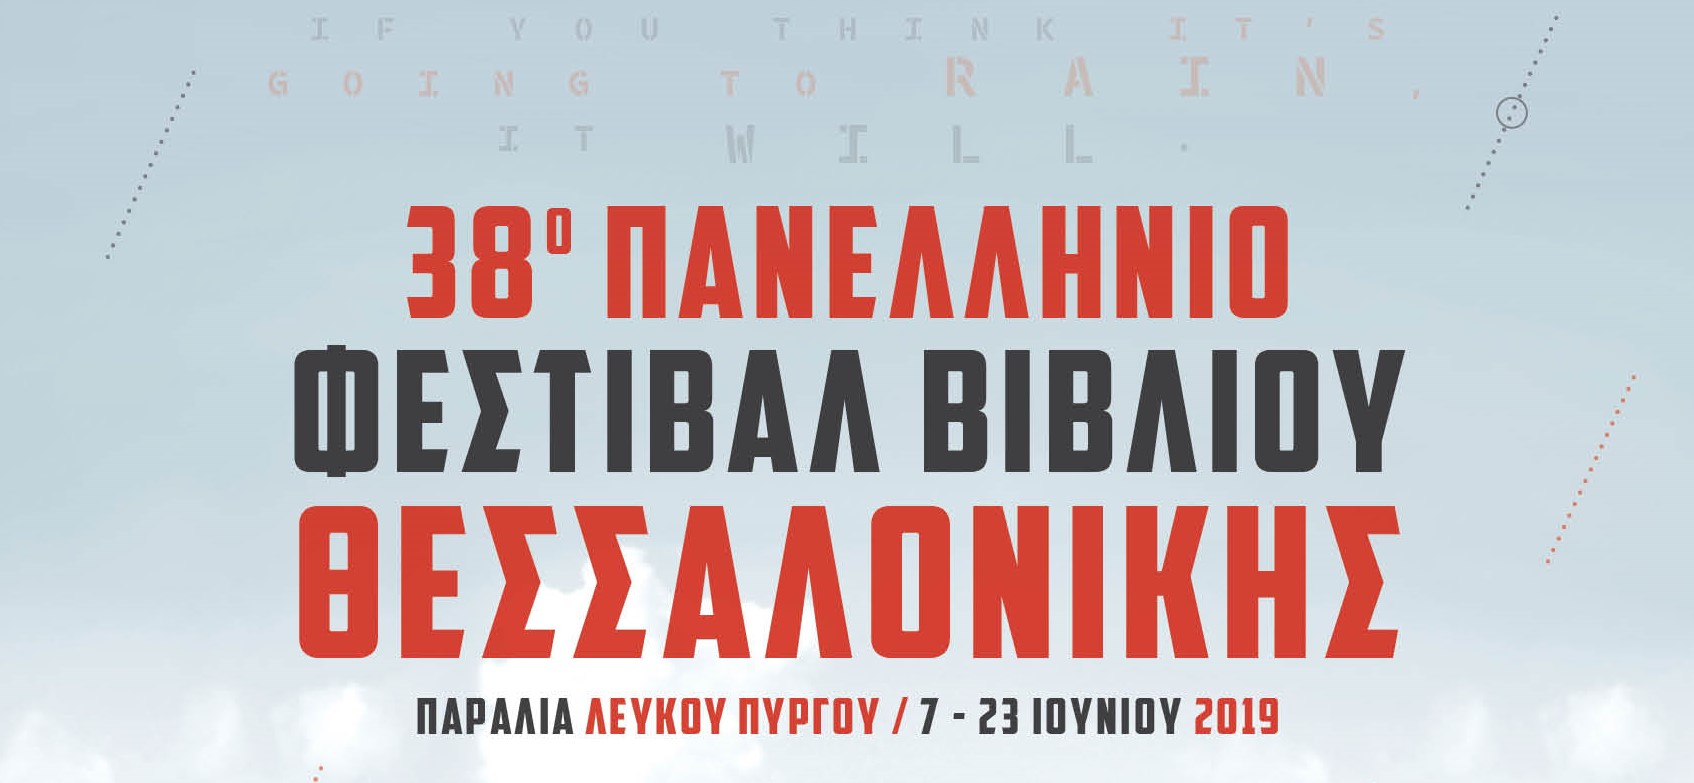 Συμμετοχή στο Φεστιβάλ Βιβλίου Θεσσαλονίκης